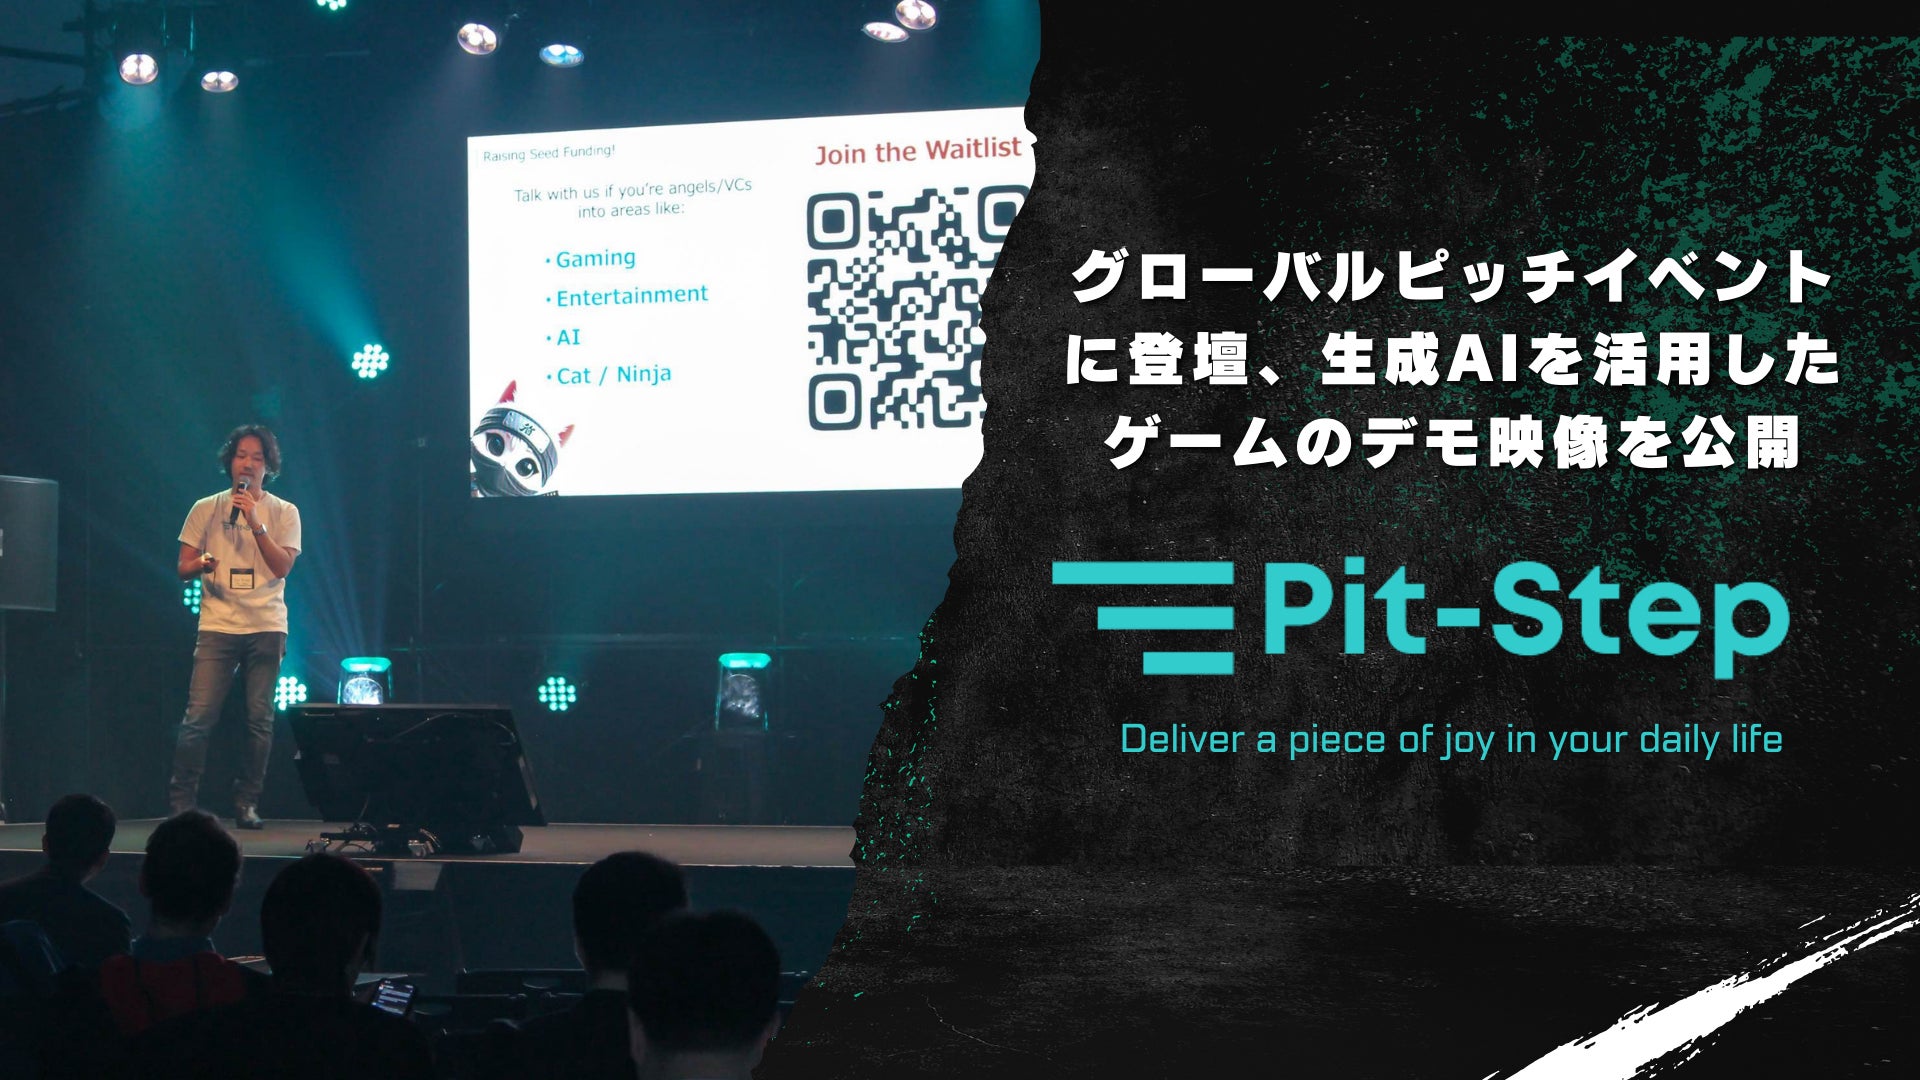 生成AIを活用したカジュアルゲームを手がける株式会社Pit-Step、Takeoff Tokyoなどのピッチイベントで開発中のデモ映像を公開。GWは創業者自ら複数のハッカソンに参加、一作目の実装を行う